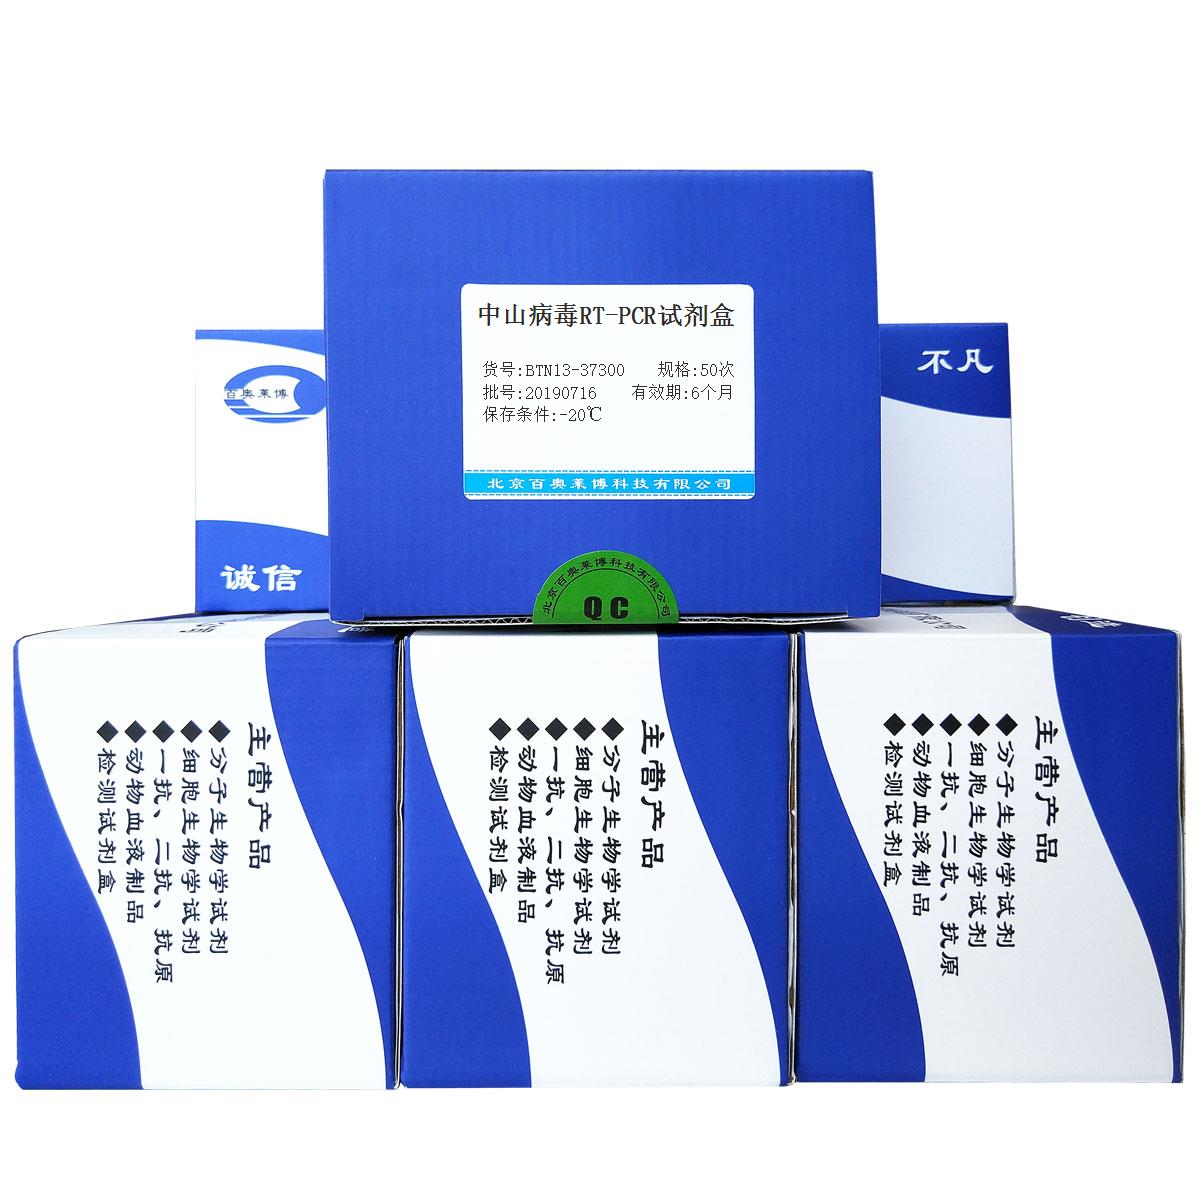 中山病毒RT-PCR试剂盒现货供应